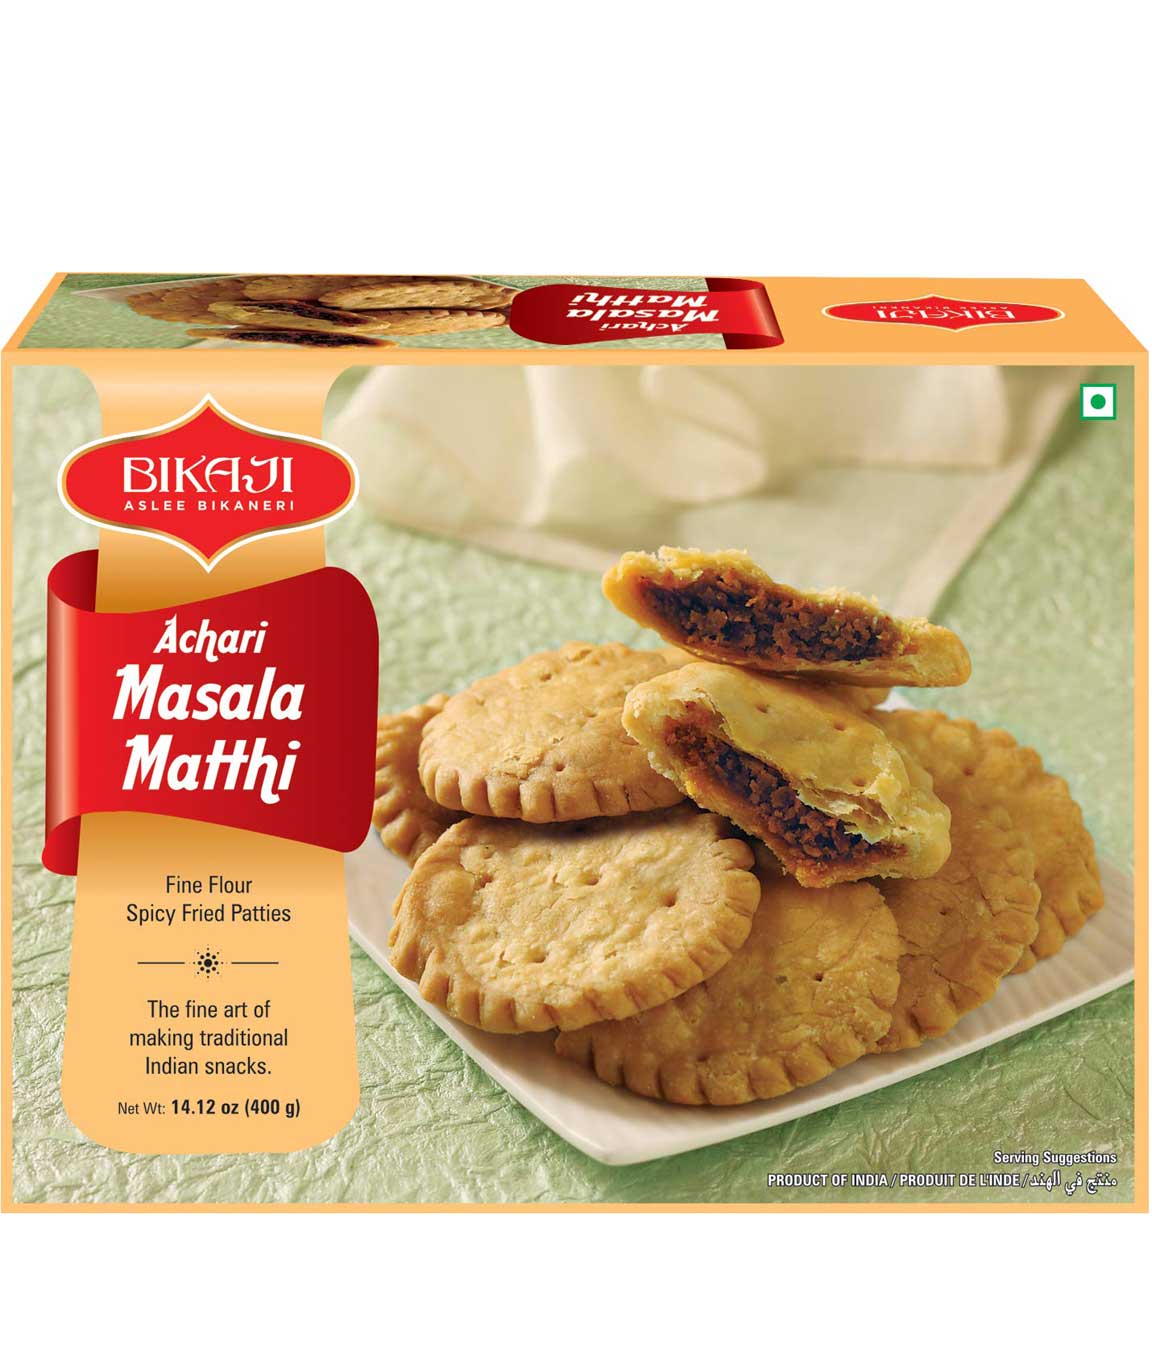 Bikaji Achari Masala Matthi - Indian Namkeen Snack 400g - Pack of 1